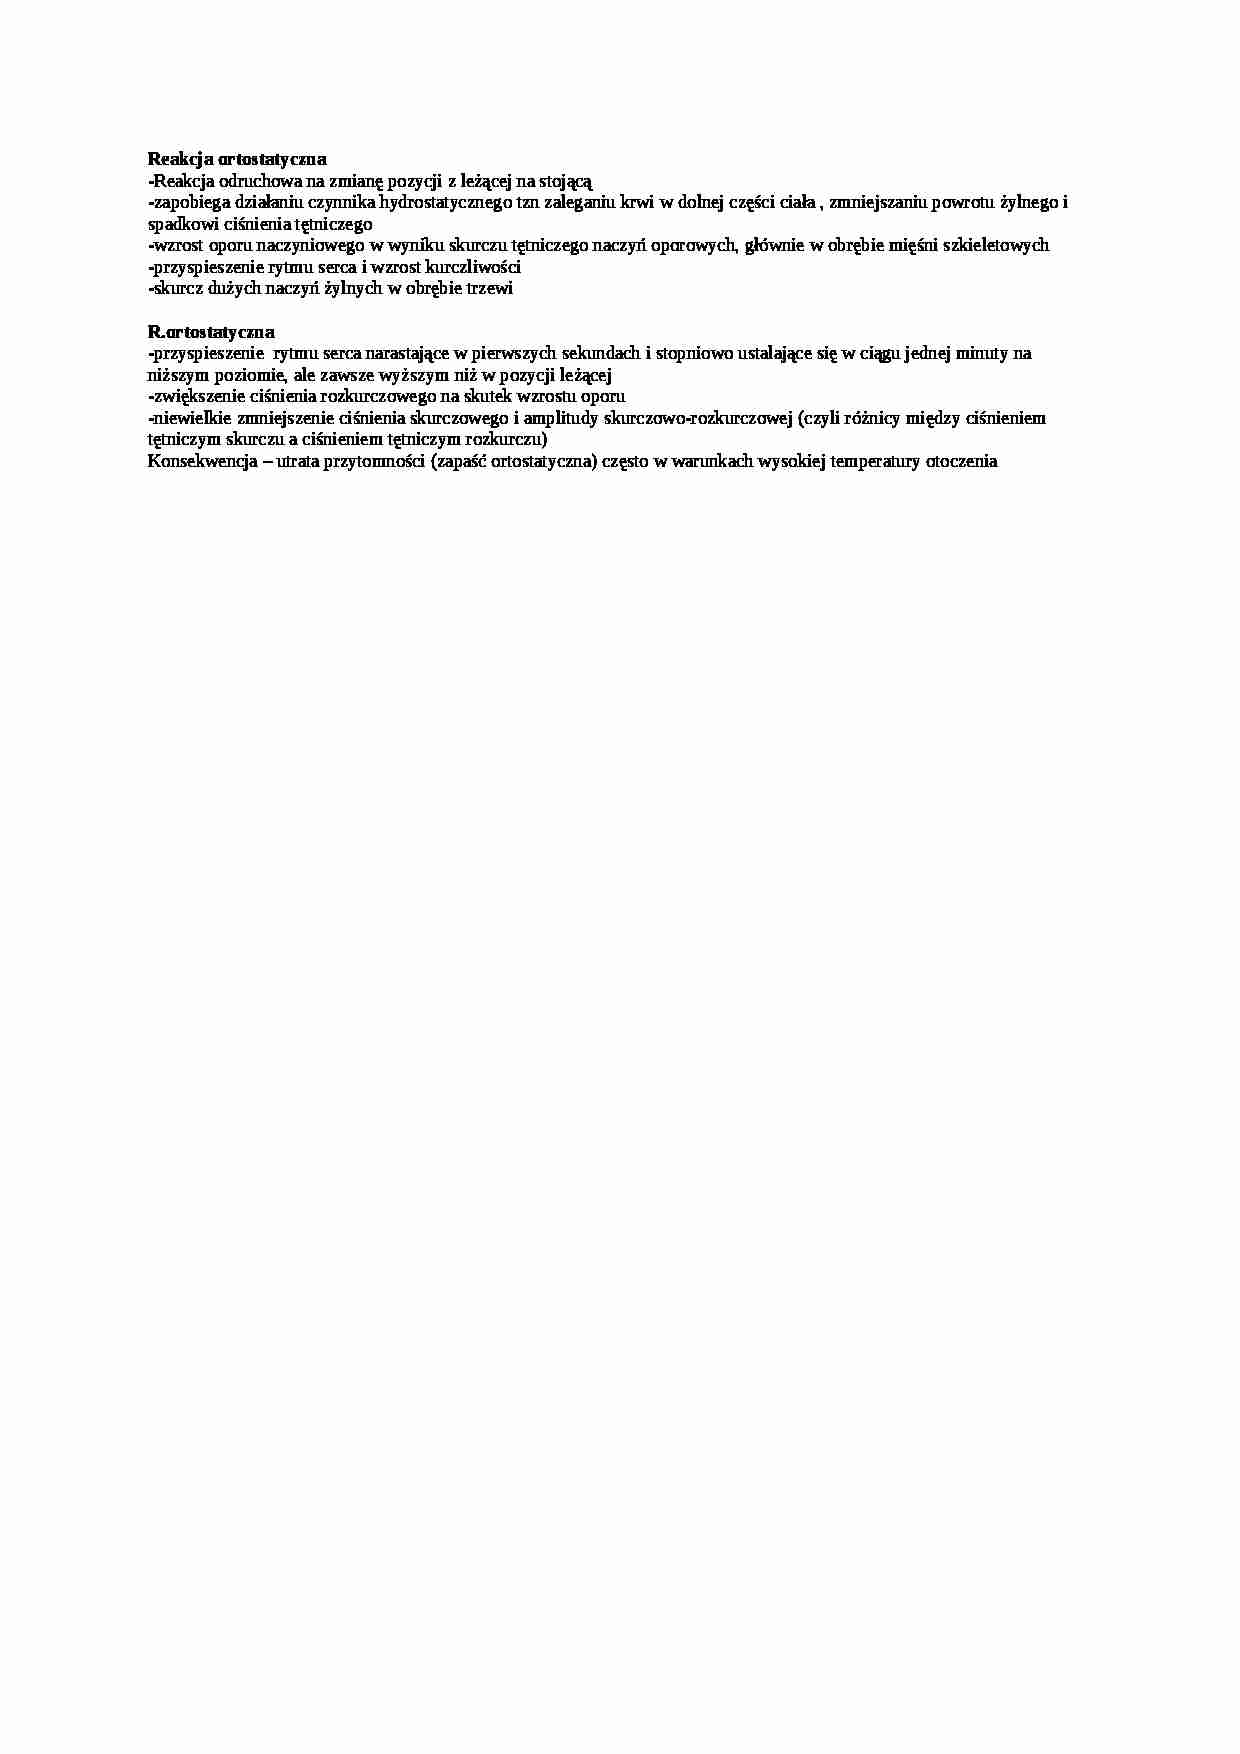 Opracowanie - reakcja ortostatyczna, sem IV - strona 1